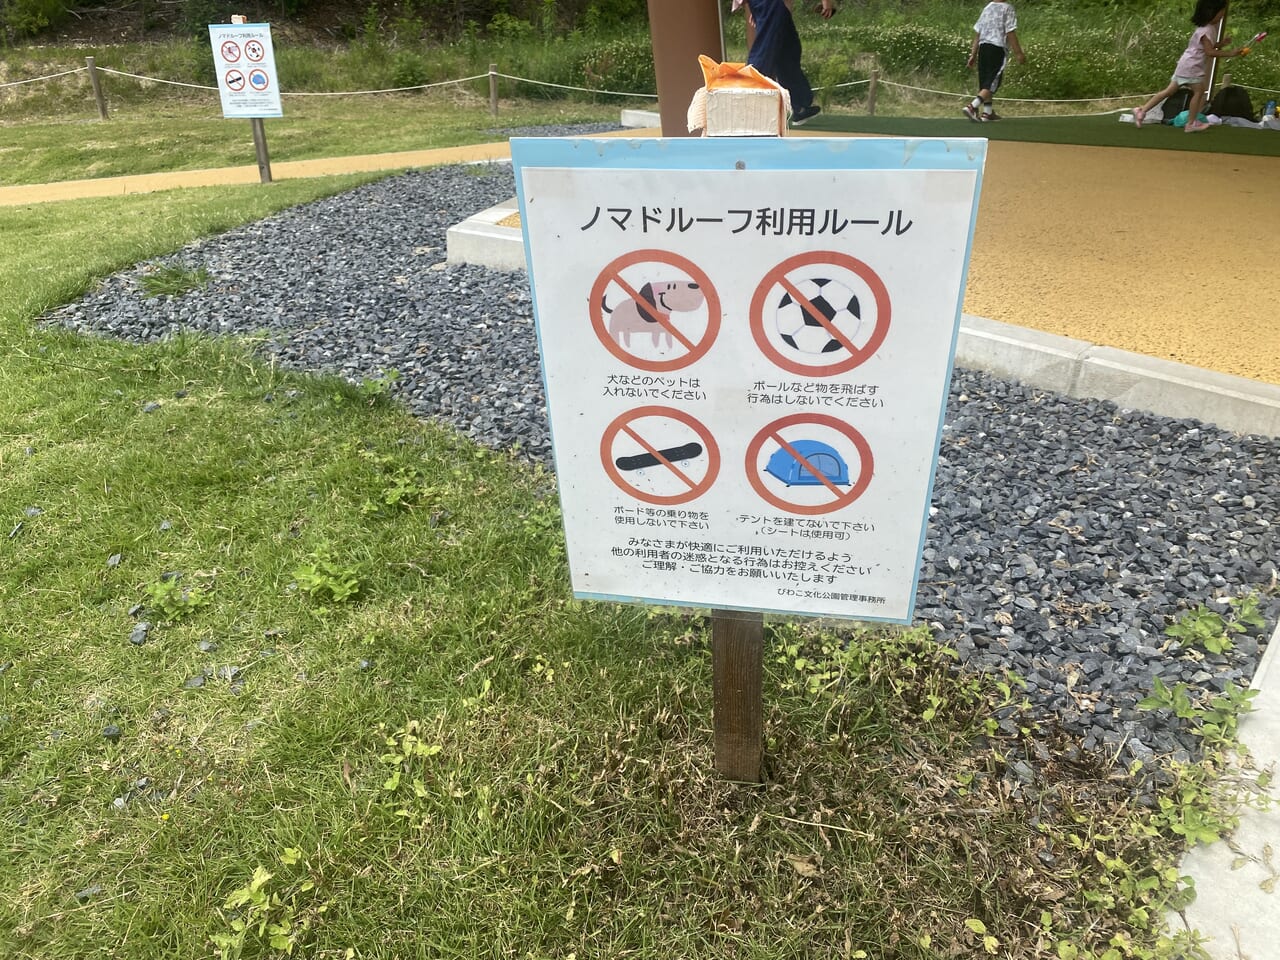 びわこ文化公園わんぱく原っぱノマドルーフの利用ルール